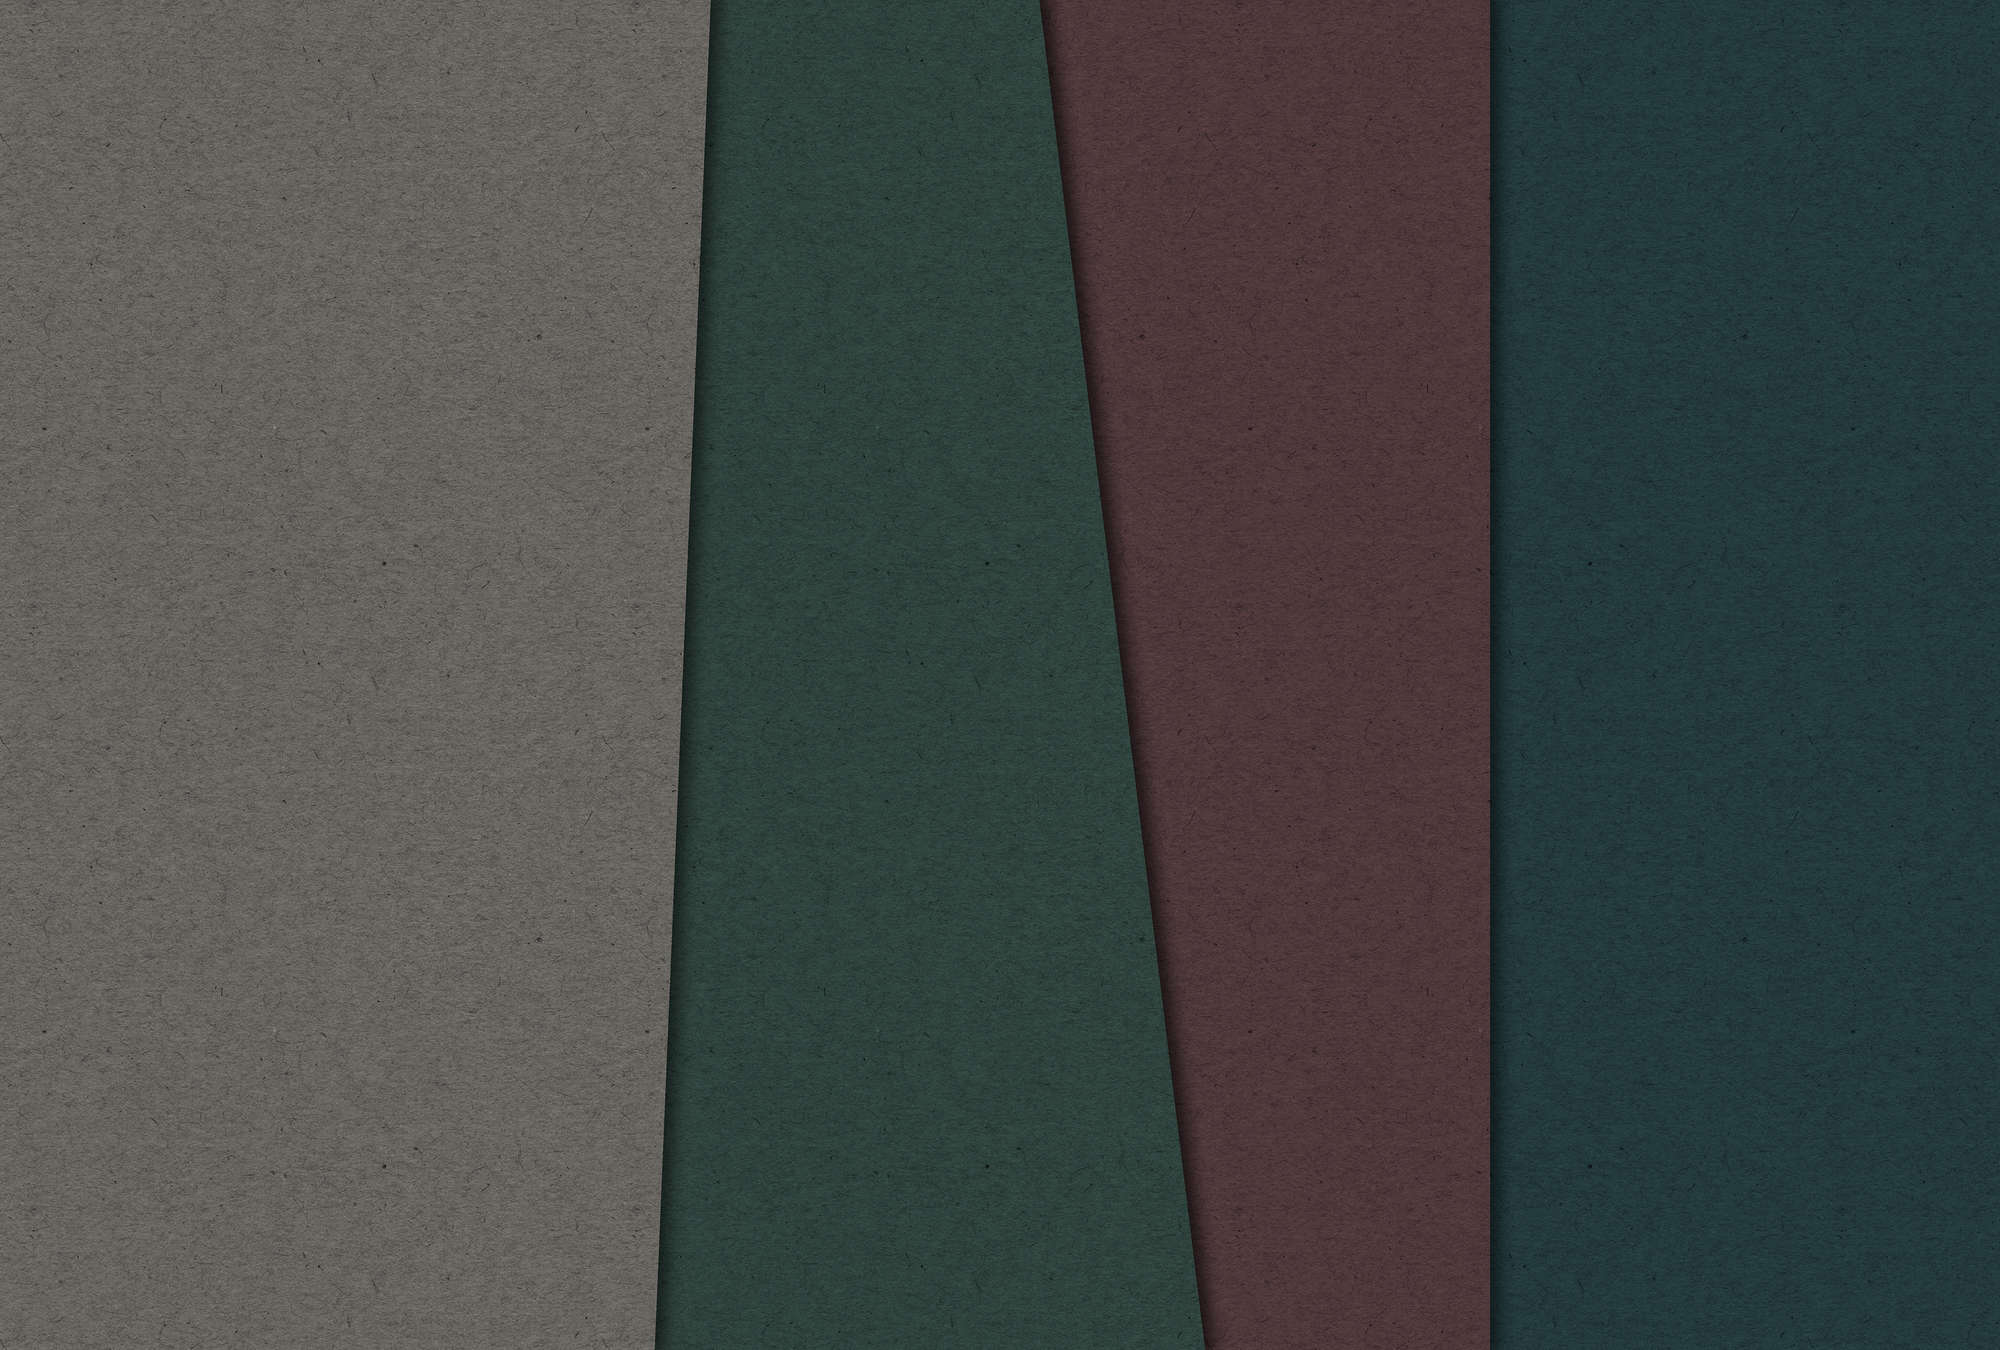             Gelaagd karton 1 - Fotobehang met donkergekleurde vlakken in kartonstructuur - Bruin, Groen | Strukturenvlies
        